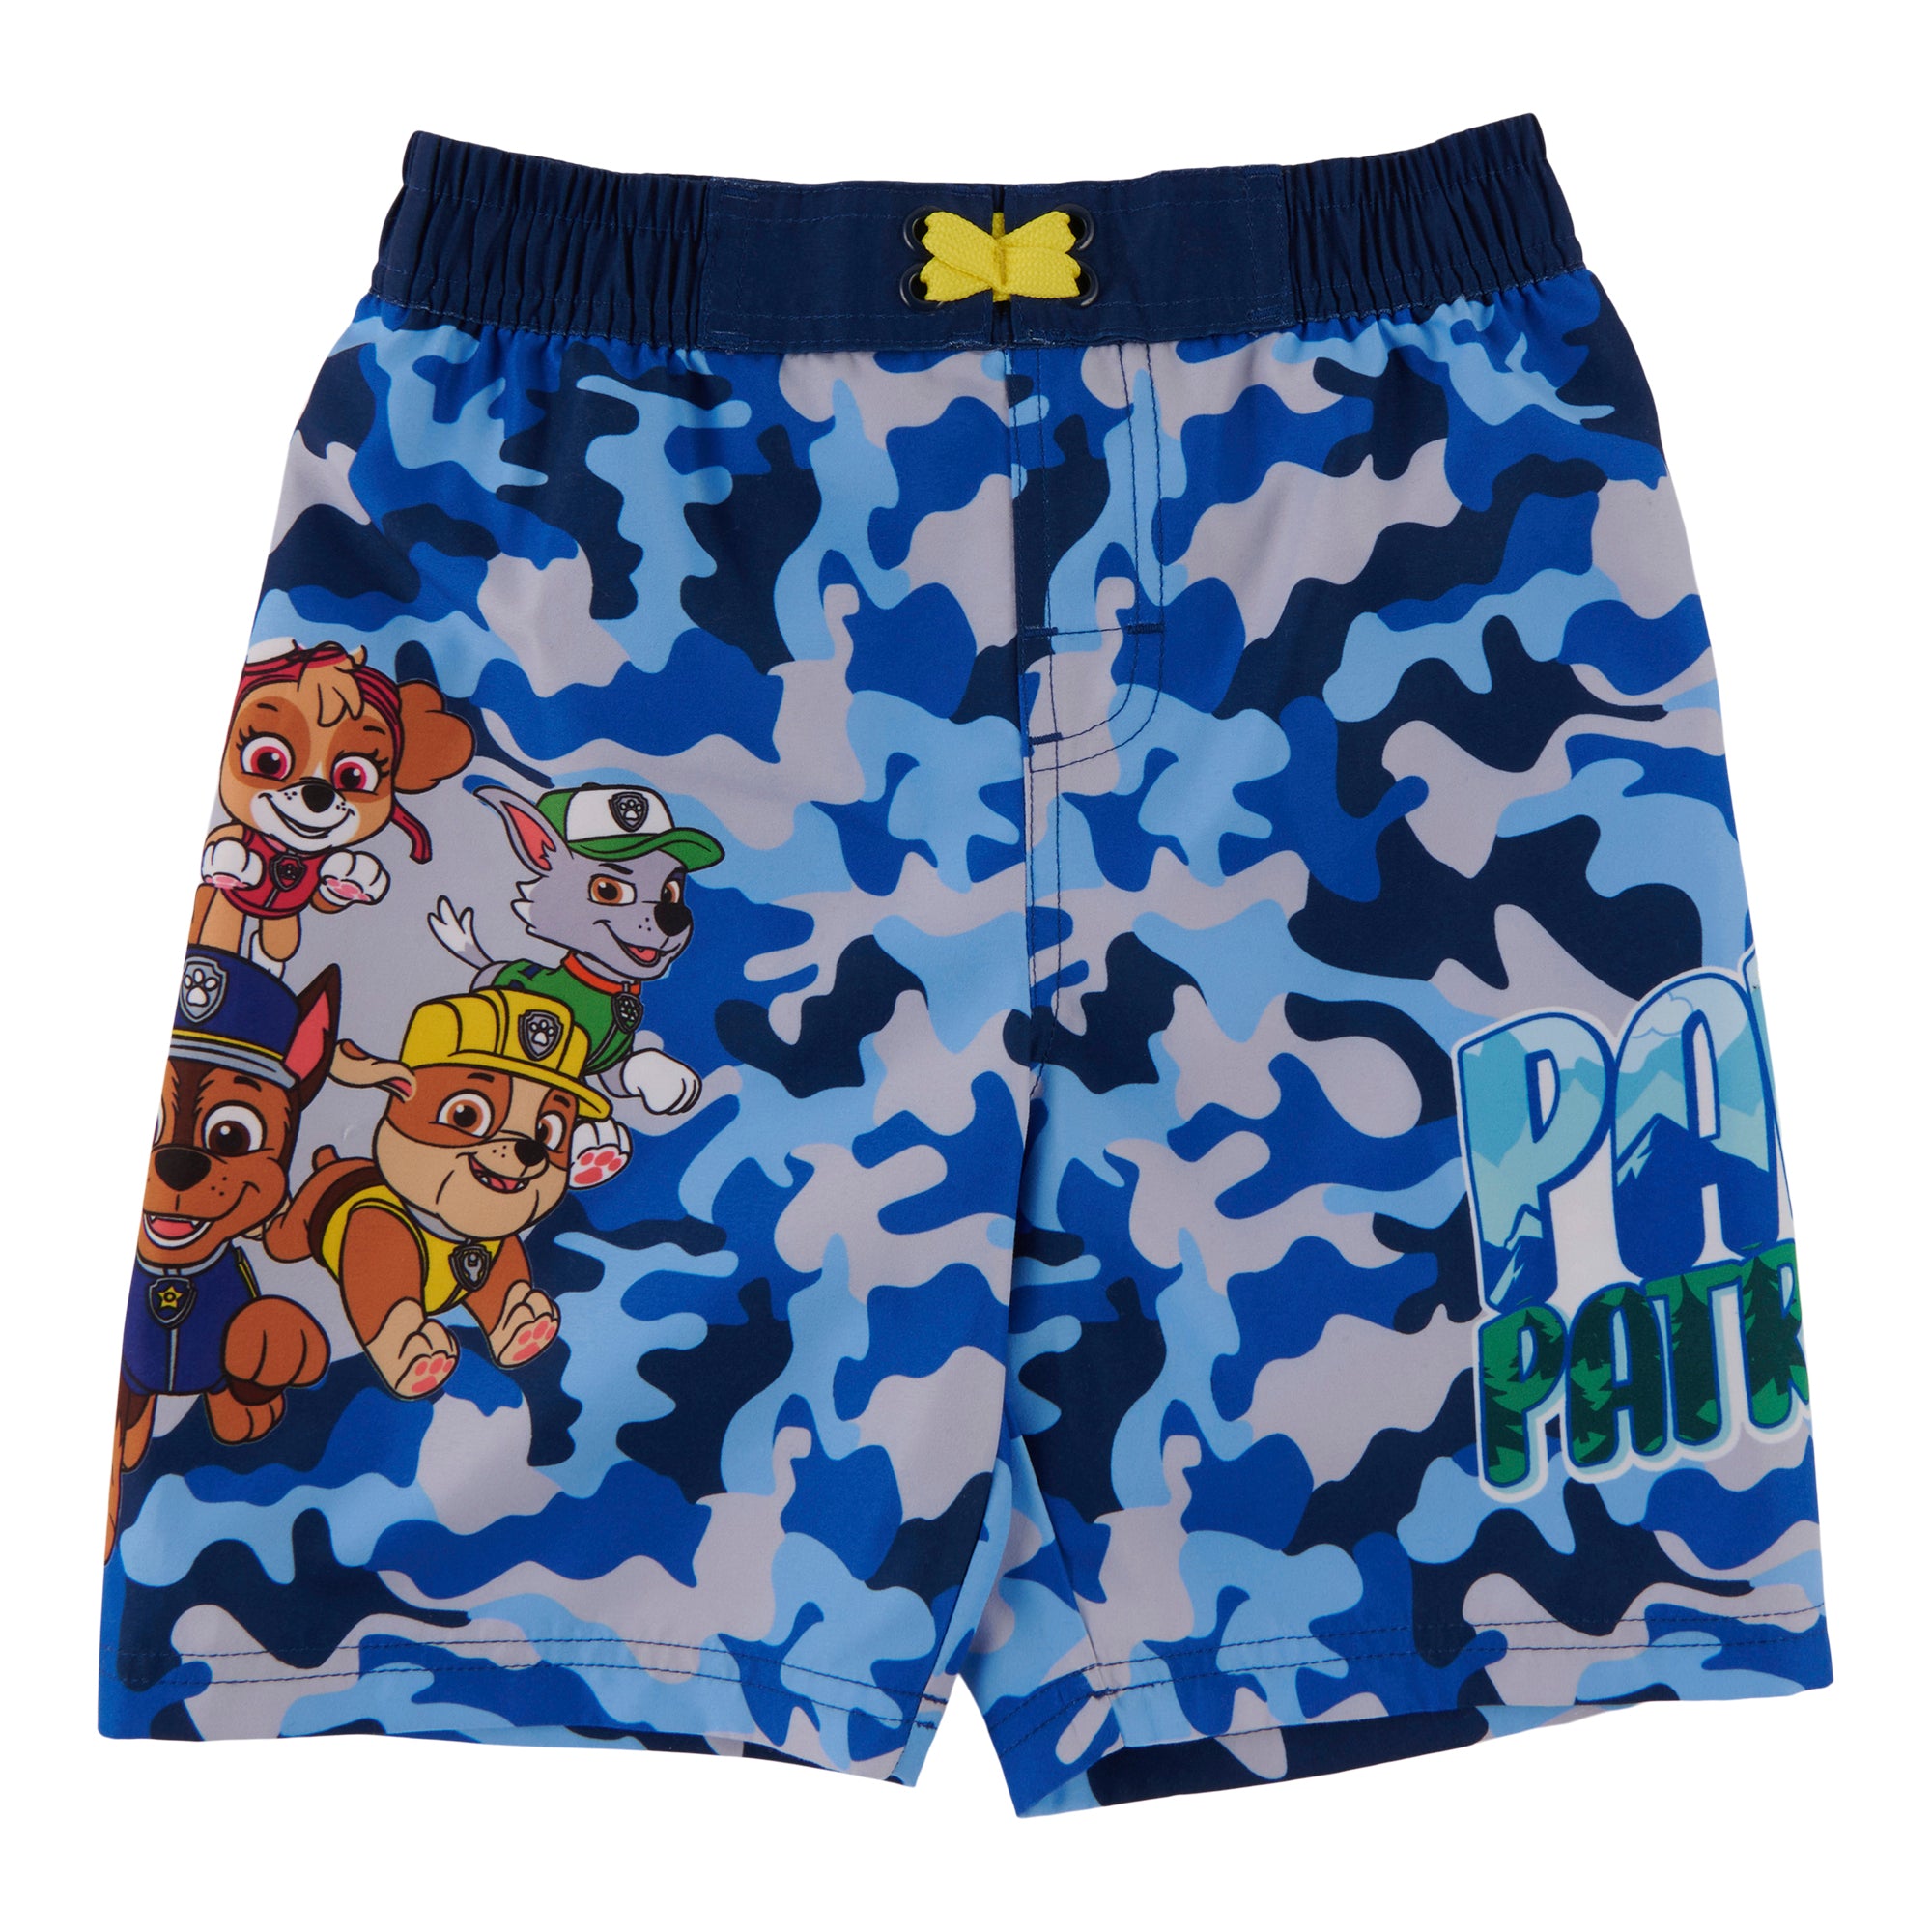 Paw Patrol Boy's Swimsuit - Paw Patrol - Swim trunks